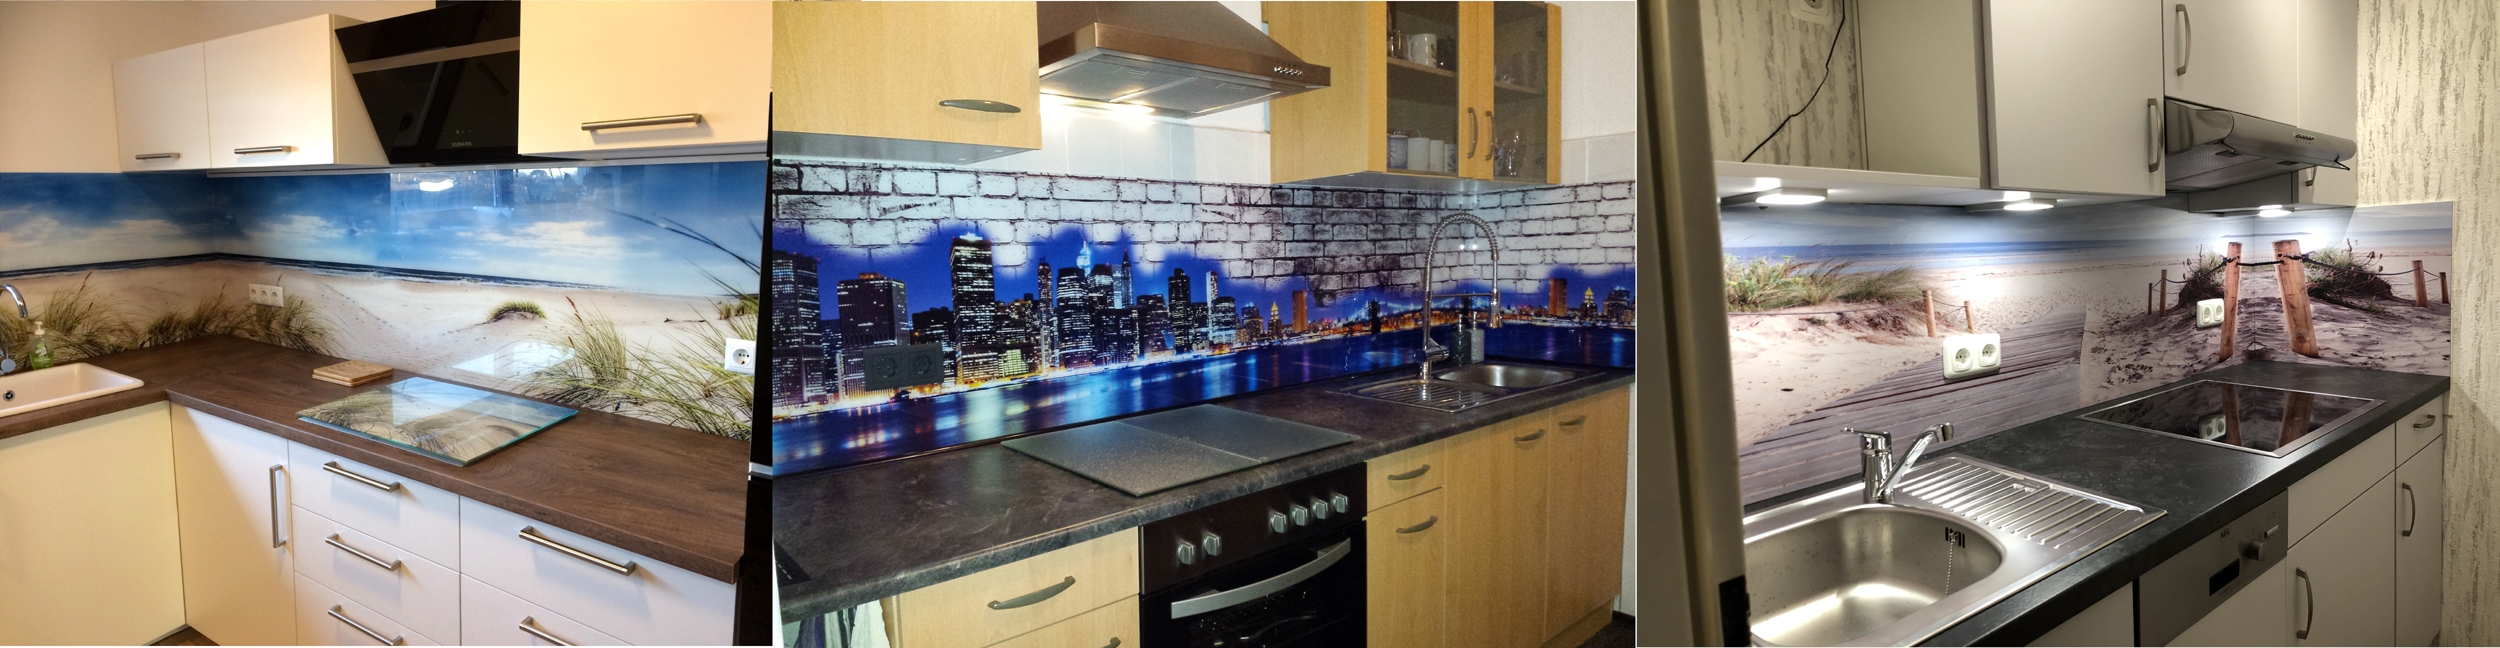 220 x 60 cm Dedeco Küchenrückwand Motiv: Abstrakt V4 3D-Effekt 3mm Acrylglas Plexiglas als Spritzschutz für die Küchenwand Wandschutz Dekowand wasserfest alle Untergründe 